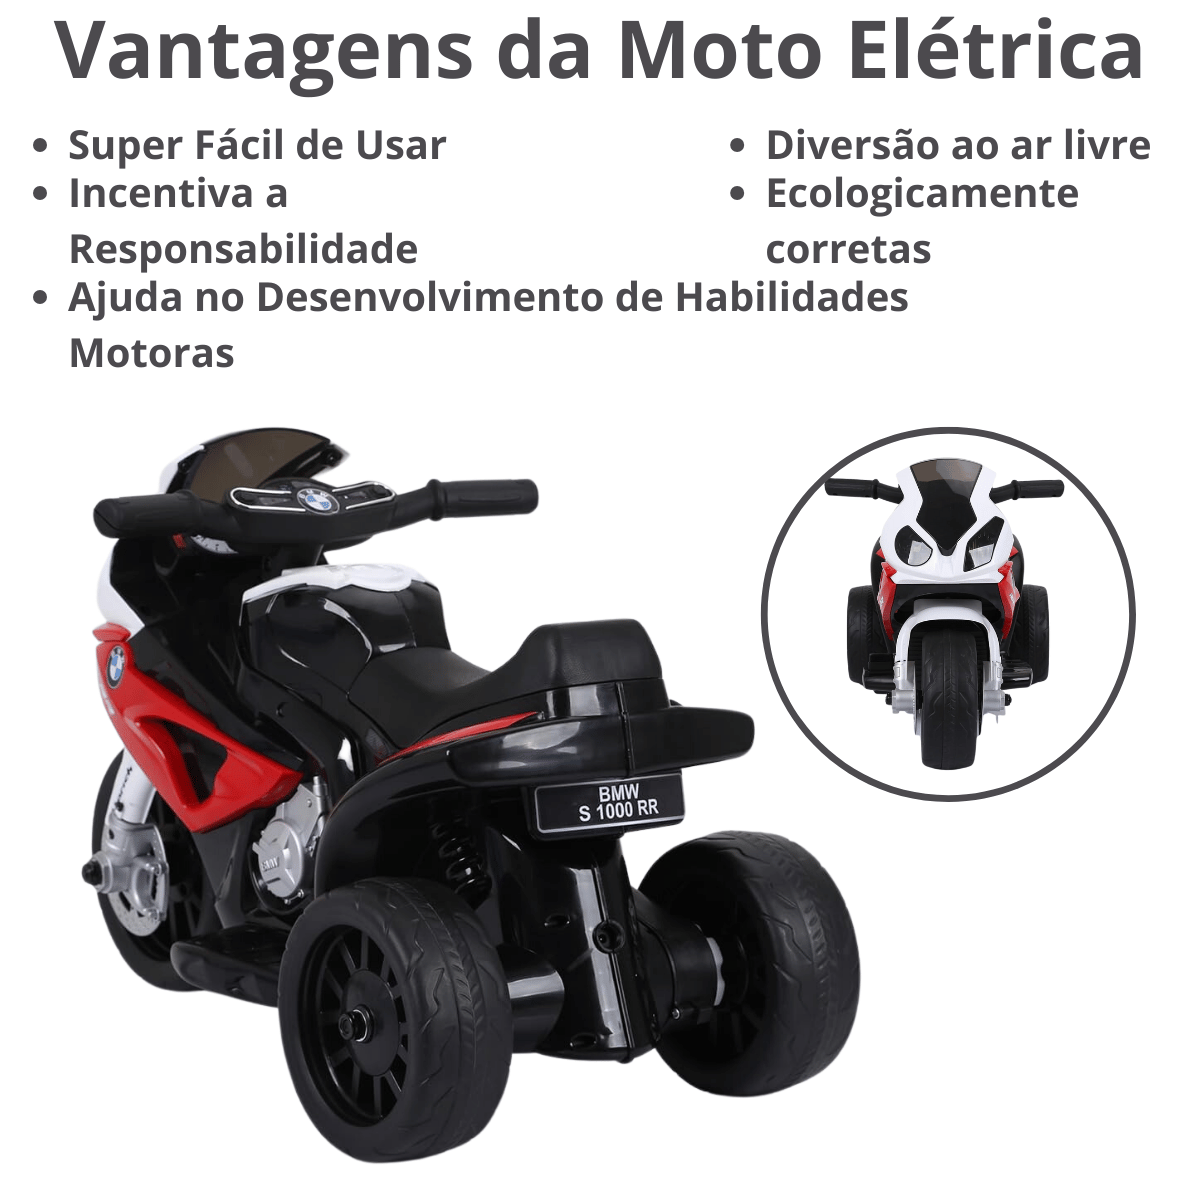 Mini Moto Triciclo Elétrica Infantil Bmw S1000rr Vermelha Esportiva 6v Zippy Toys - 4